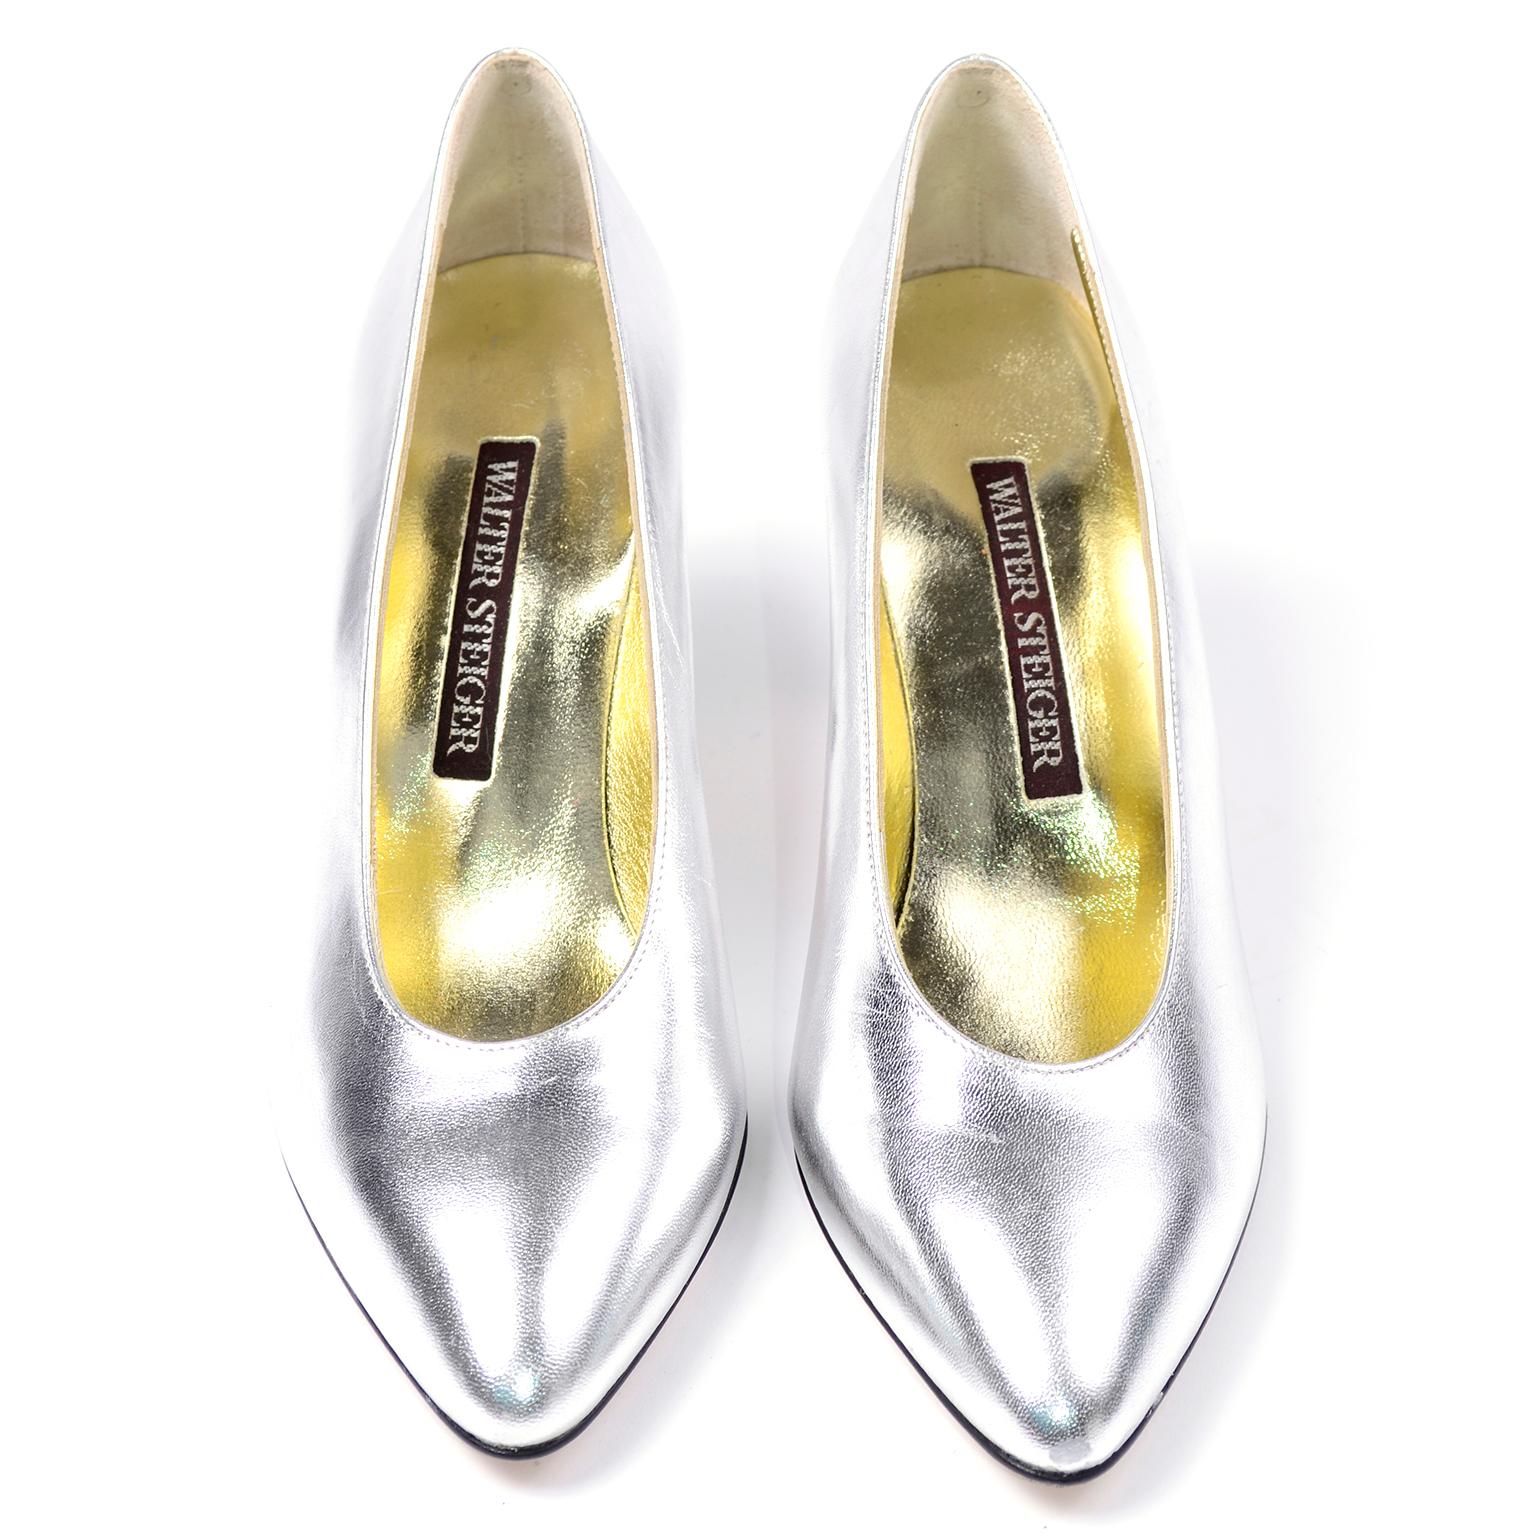 Dieses Paar Walter Steiger-Schuhe in fabelhaftem Metallic-Silber ist ein echter Hingucker. Perfekt für die Feiertage, diese Silber sanft spitzen Zehe  absätze haben Sohlen und Oberteile aus Leder. Diese Schuhe wurden nie getragen und sind, abgesehen